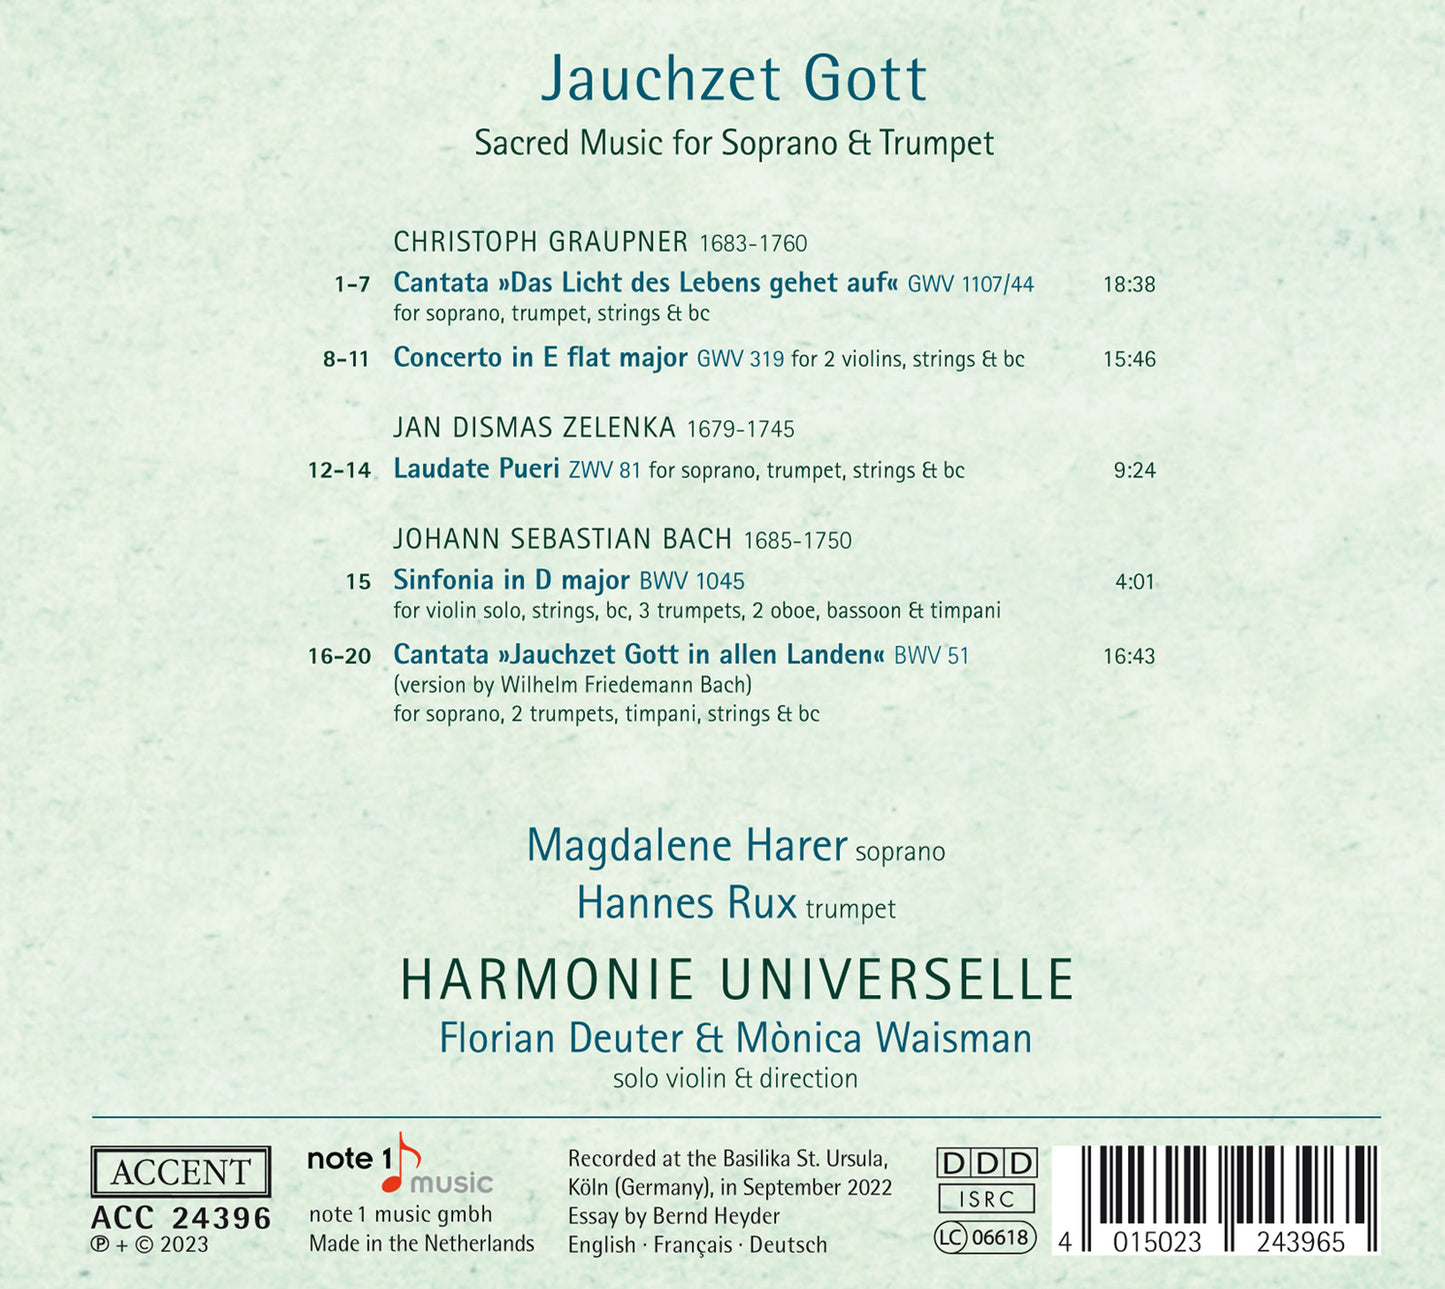 J.S. Bach, Graupner & Zelenka: Jauchzet Gott - Sacred Music